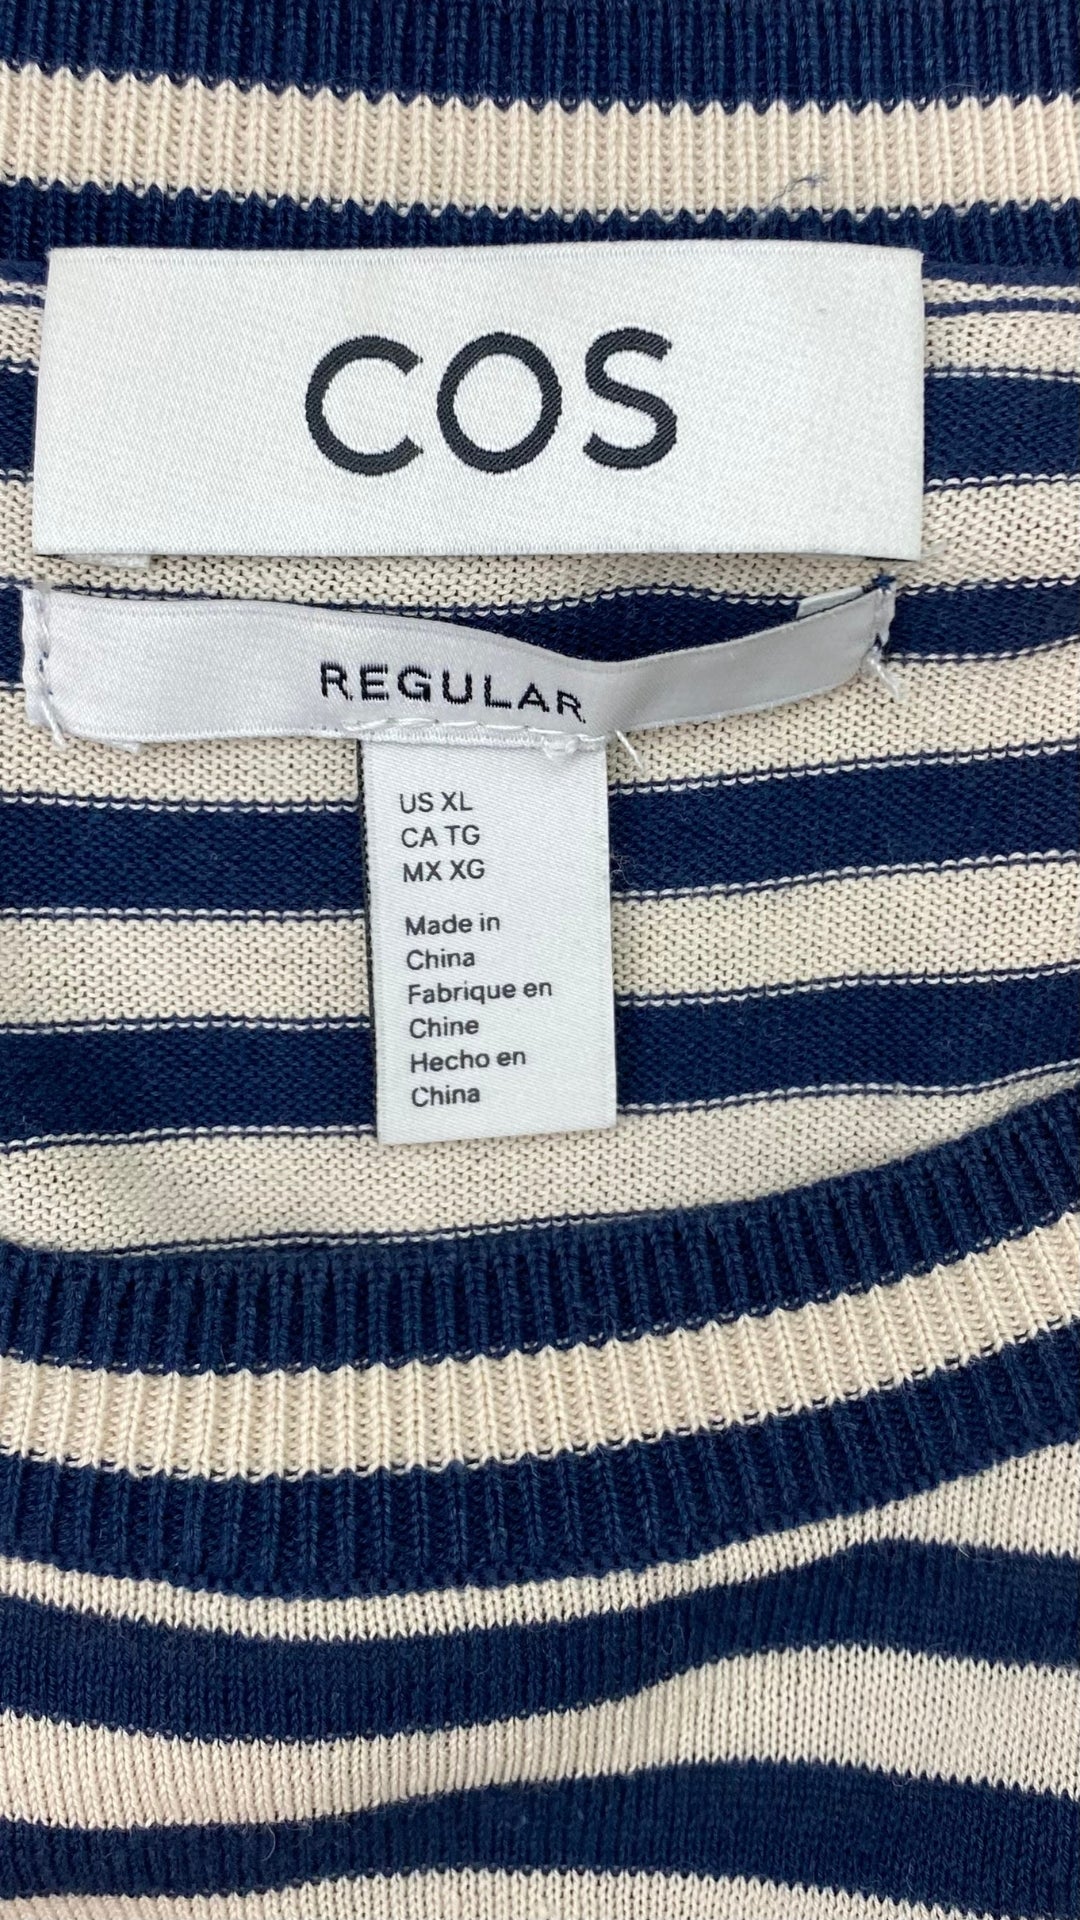 Chandail en fin tricot à rayures Cos, taille xl. Vue de l'étiquette de marque et taille.